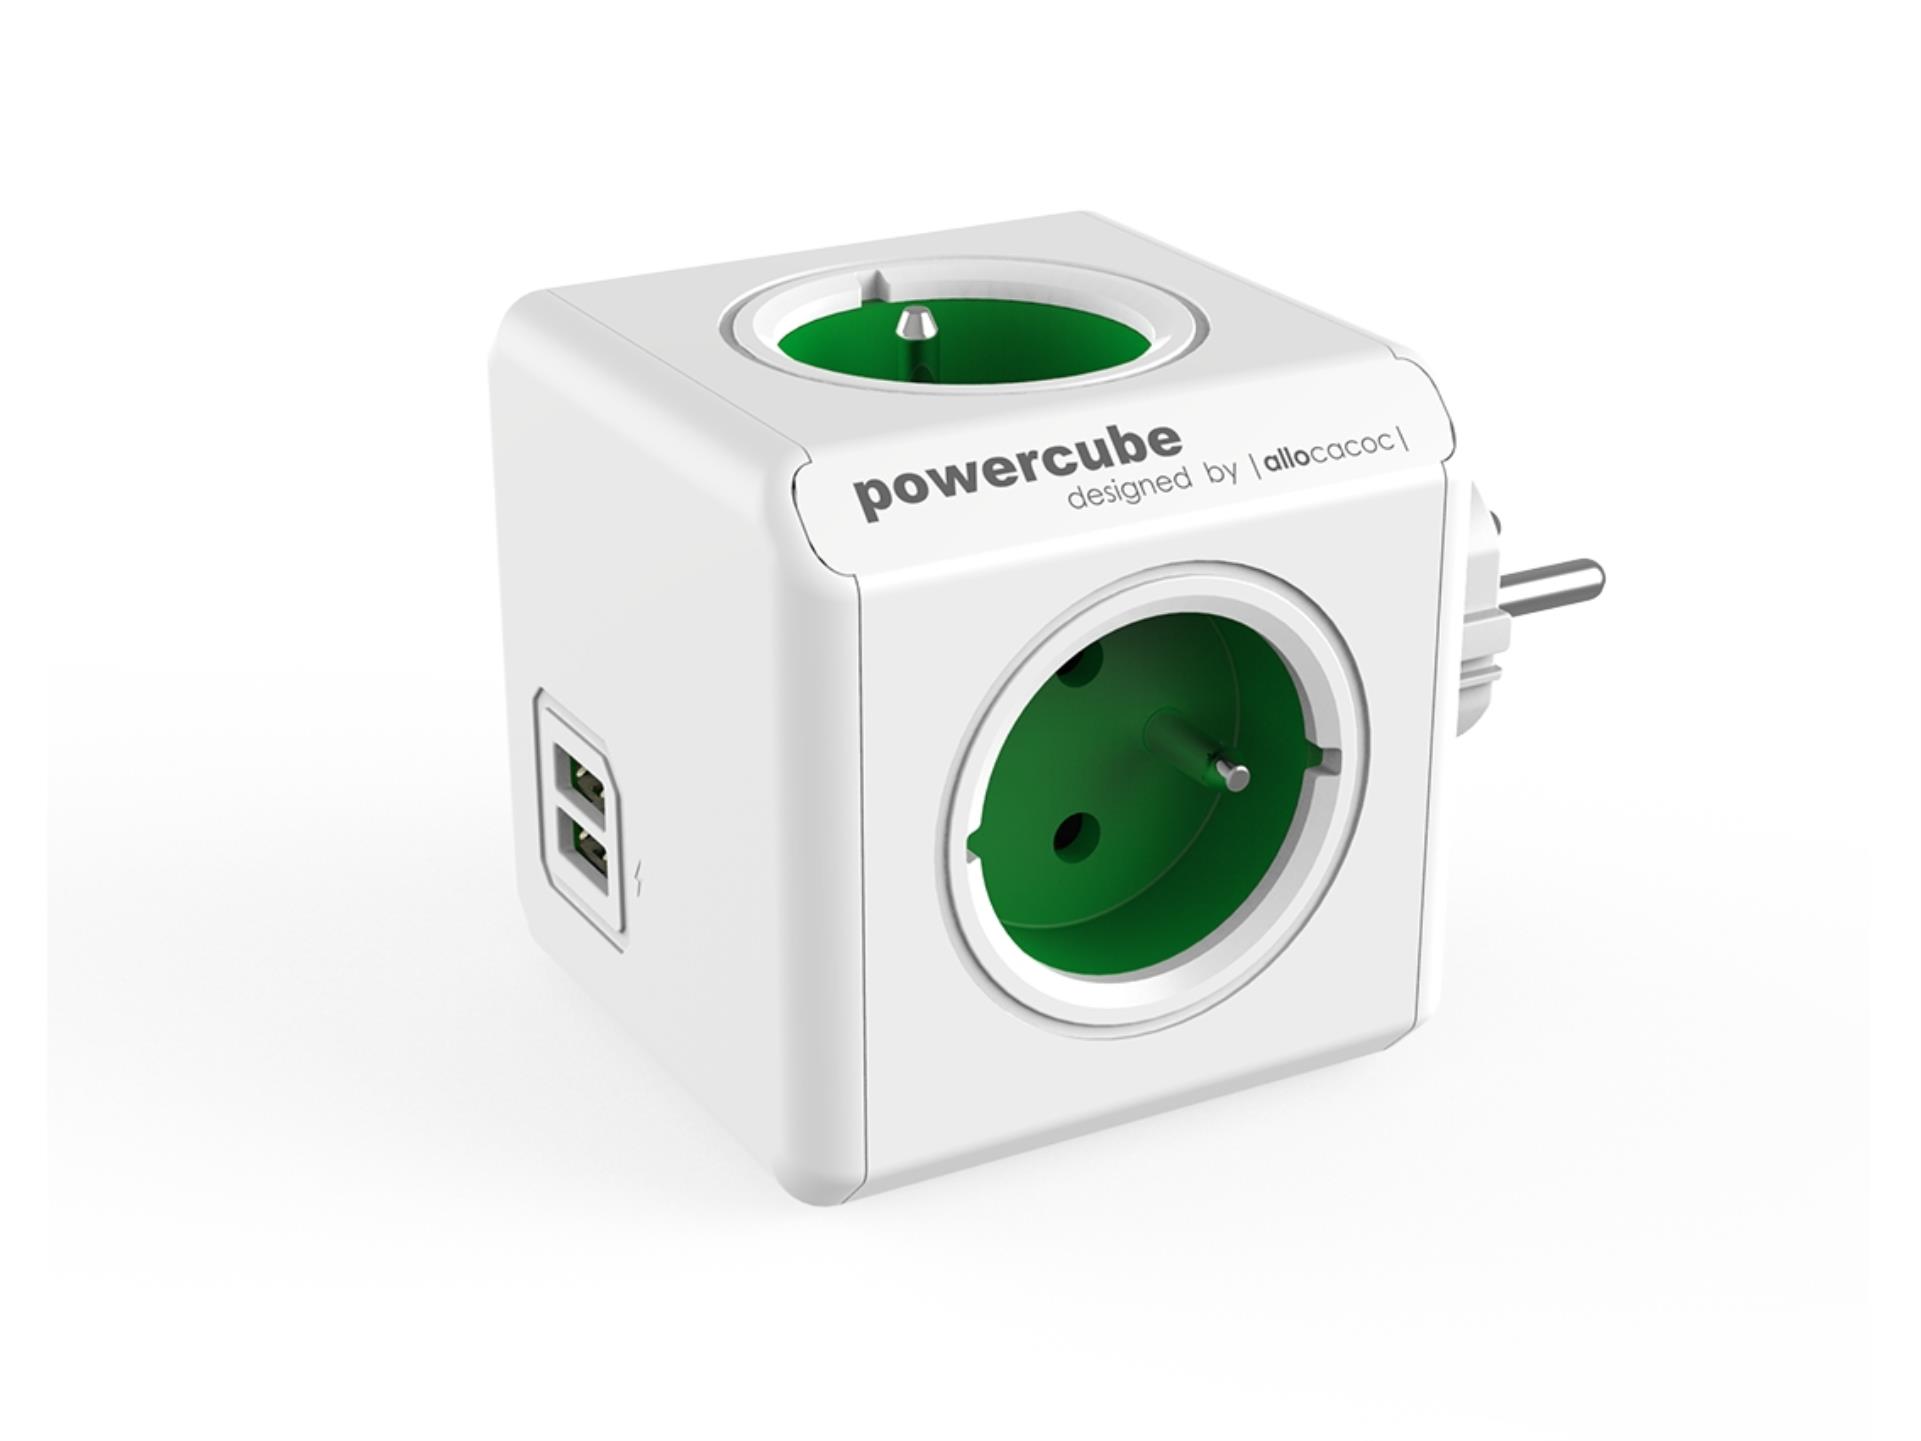 Rozbočka PowerCube Original USB, zelená